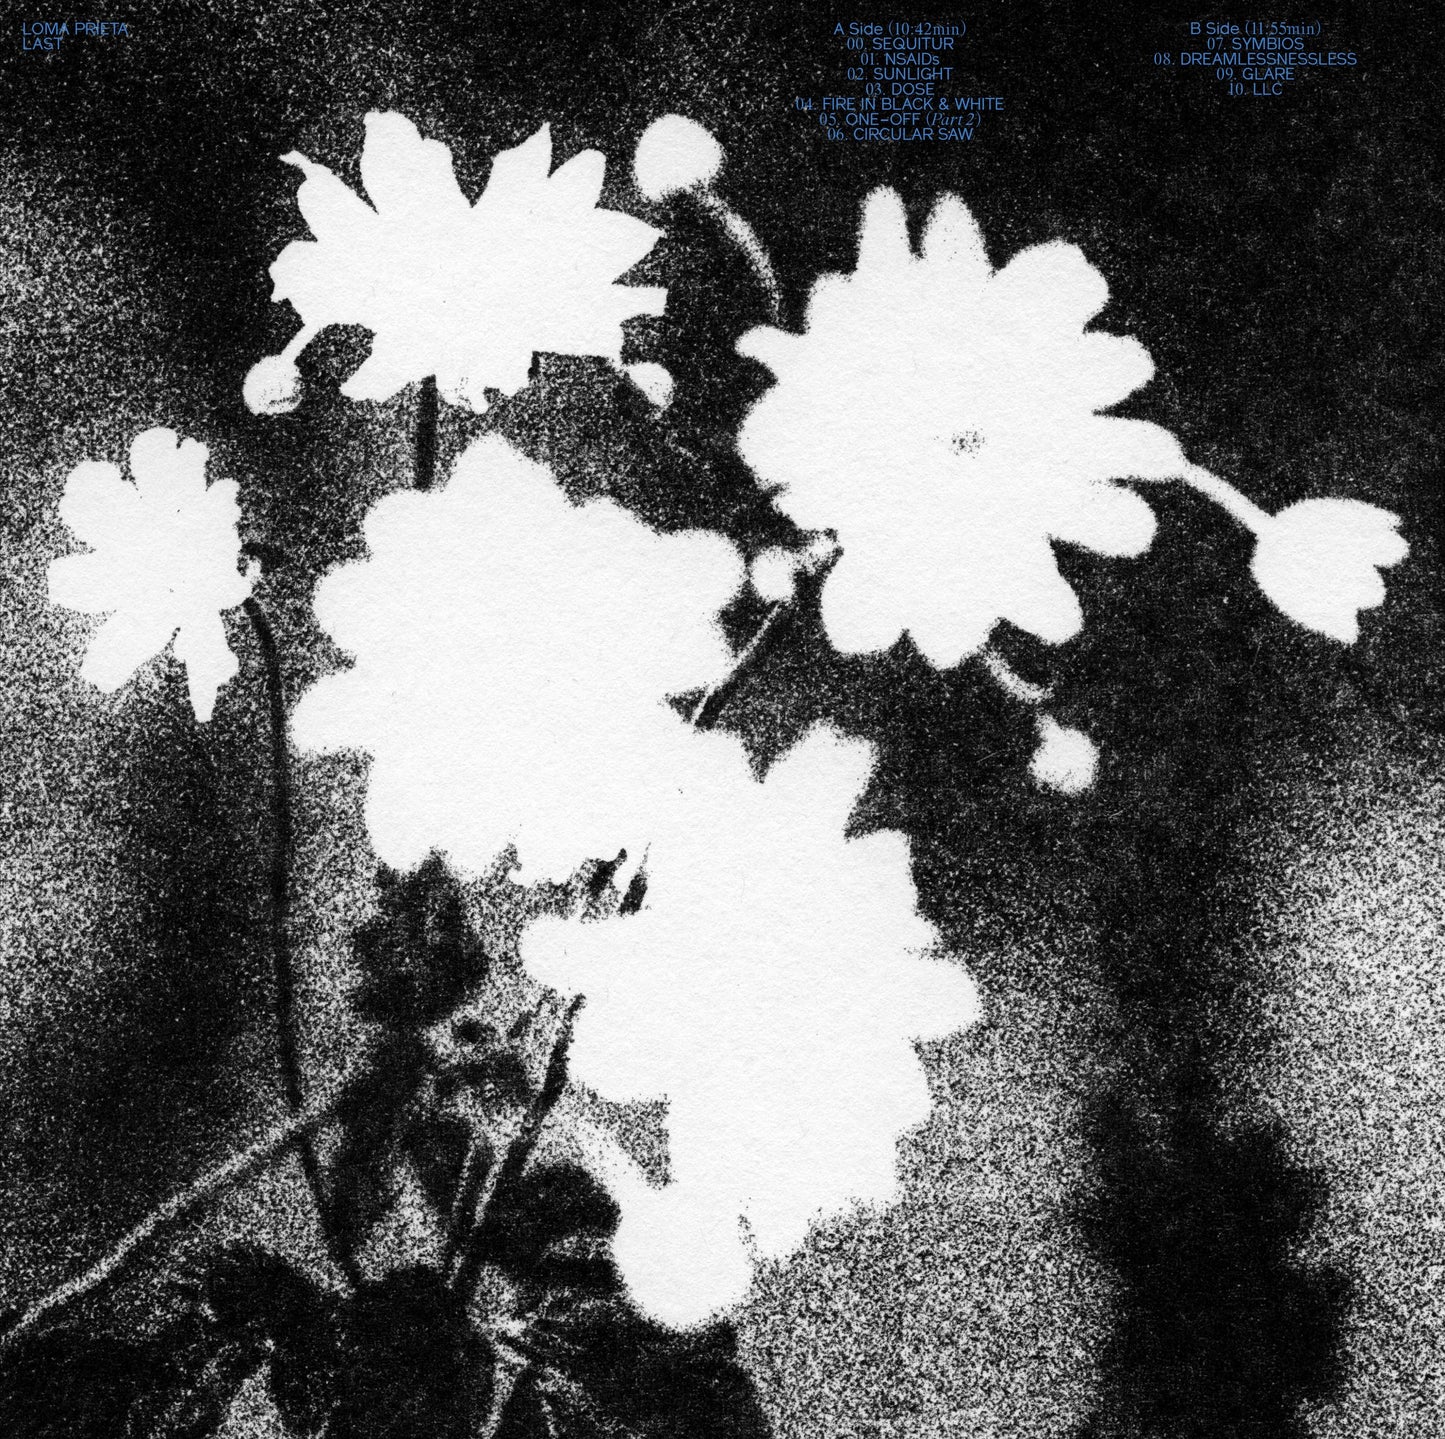 Loma Prieta - "Last" Wholesale Indie Color LP (Black / White Cornetto)